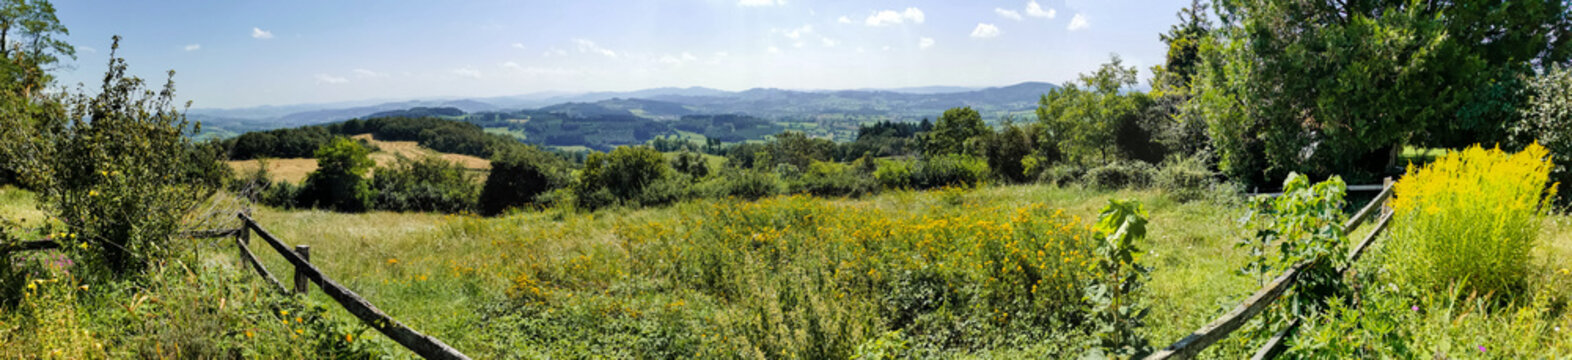 Panorama depuis la butte de Suin, dans le Charolais, Saône-et-Loire, Bourgogne-Franche-Comté, France